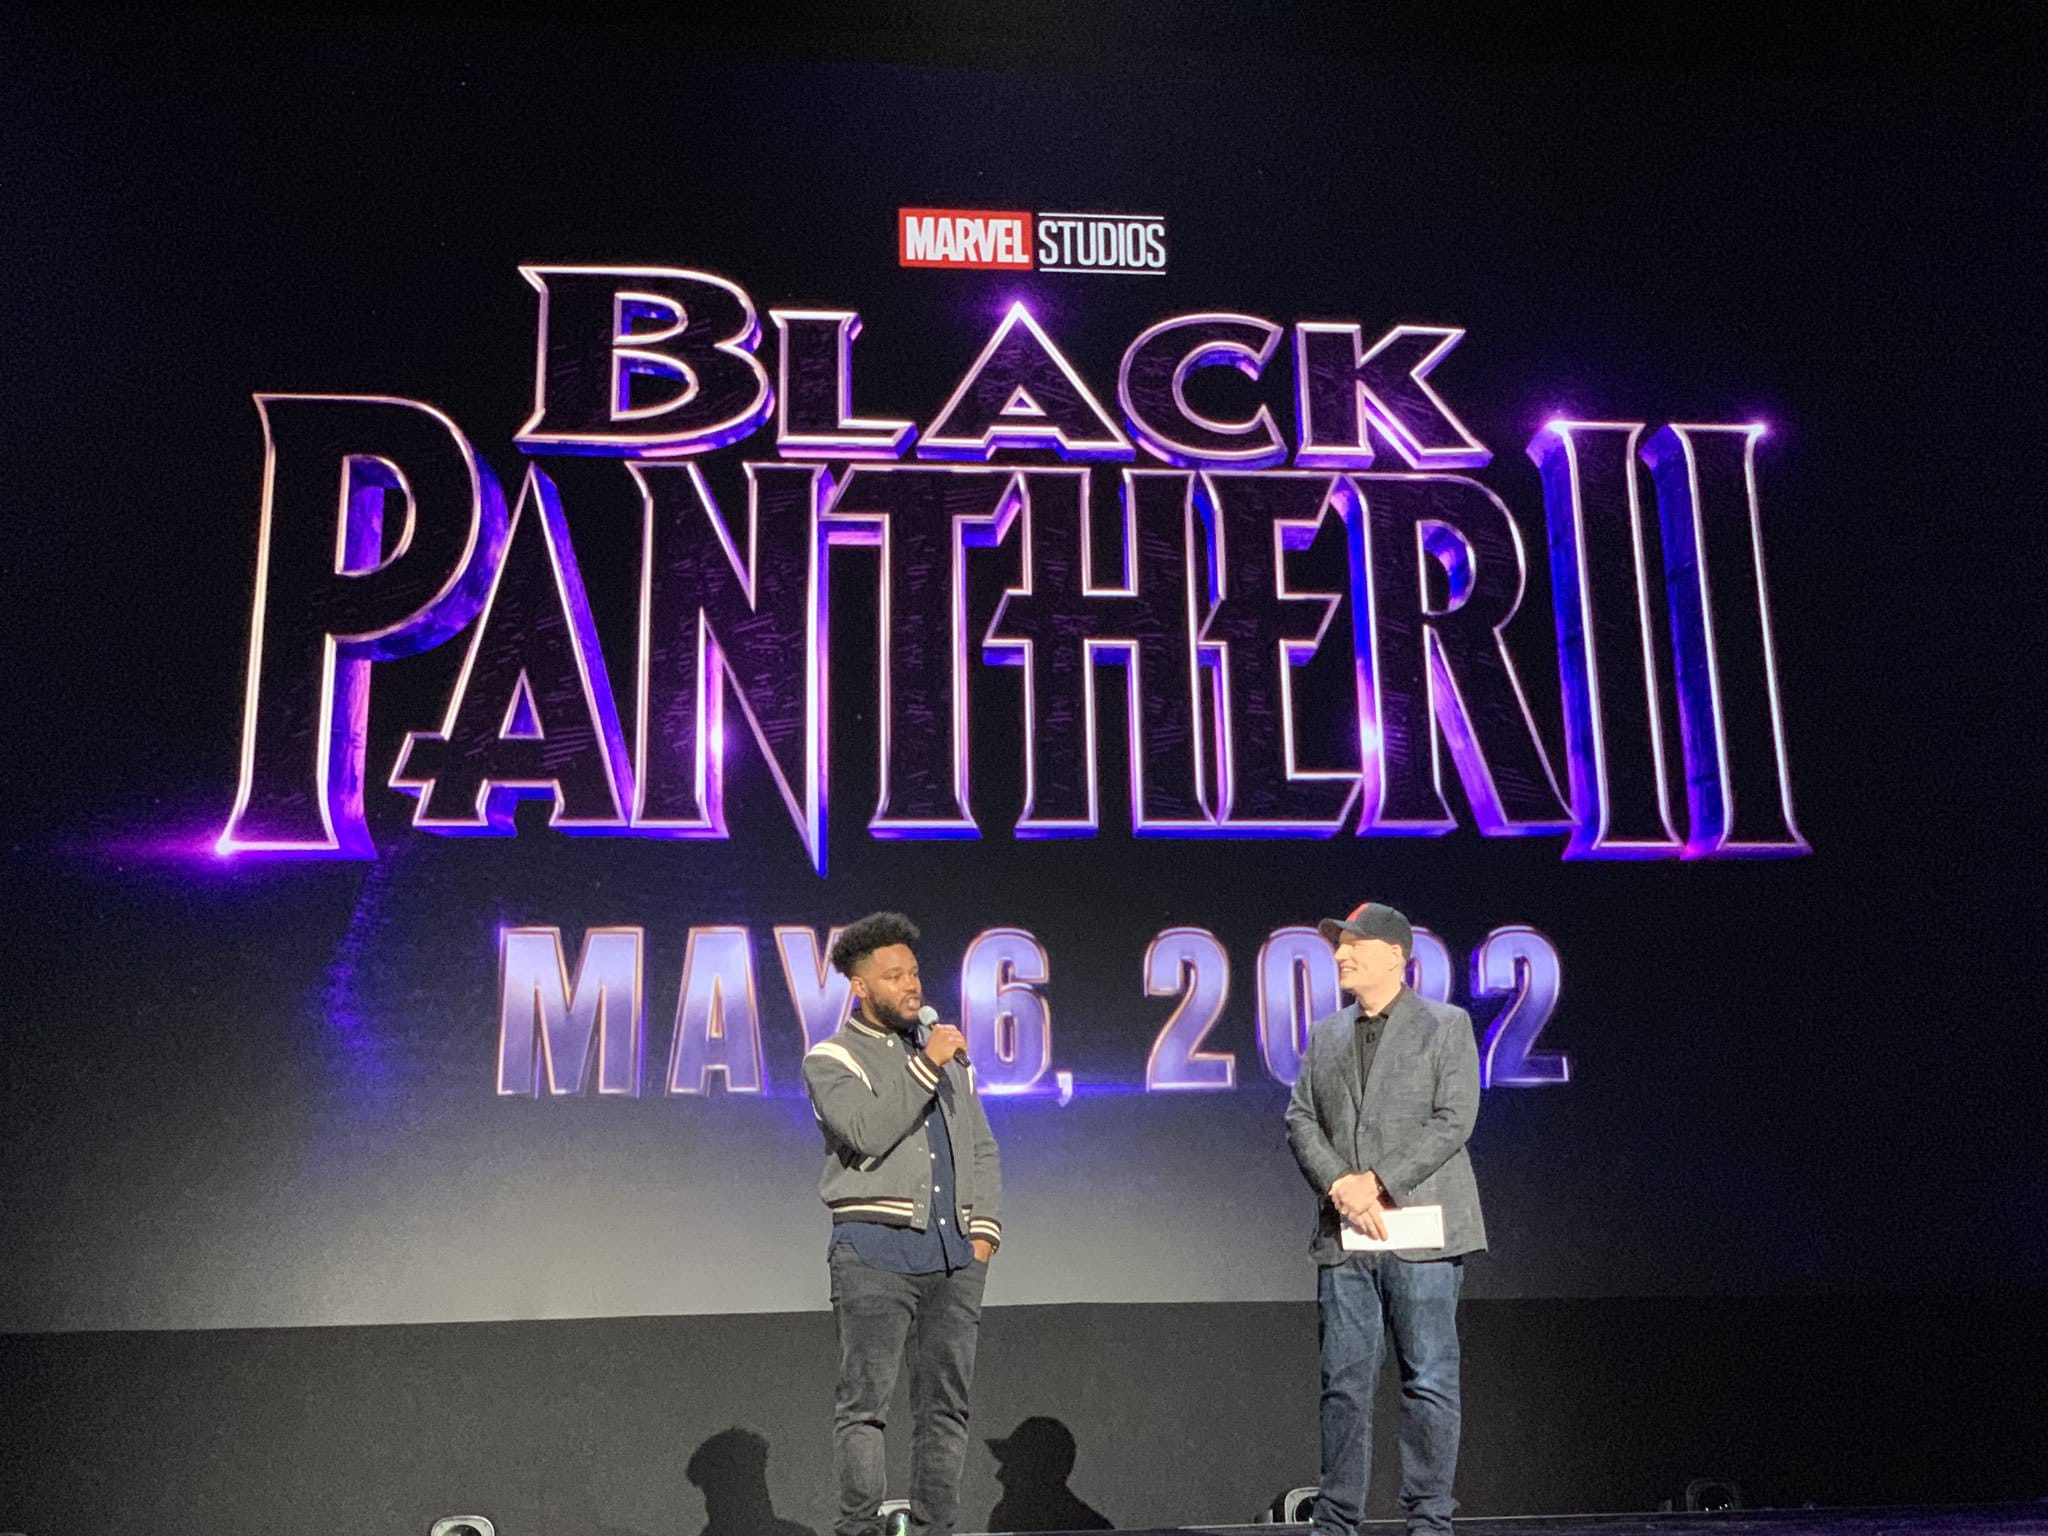 Marvel Studios confirma Black Panther 2 para el 6 de Mayo 2022